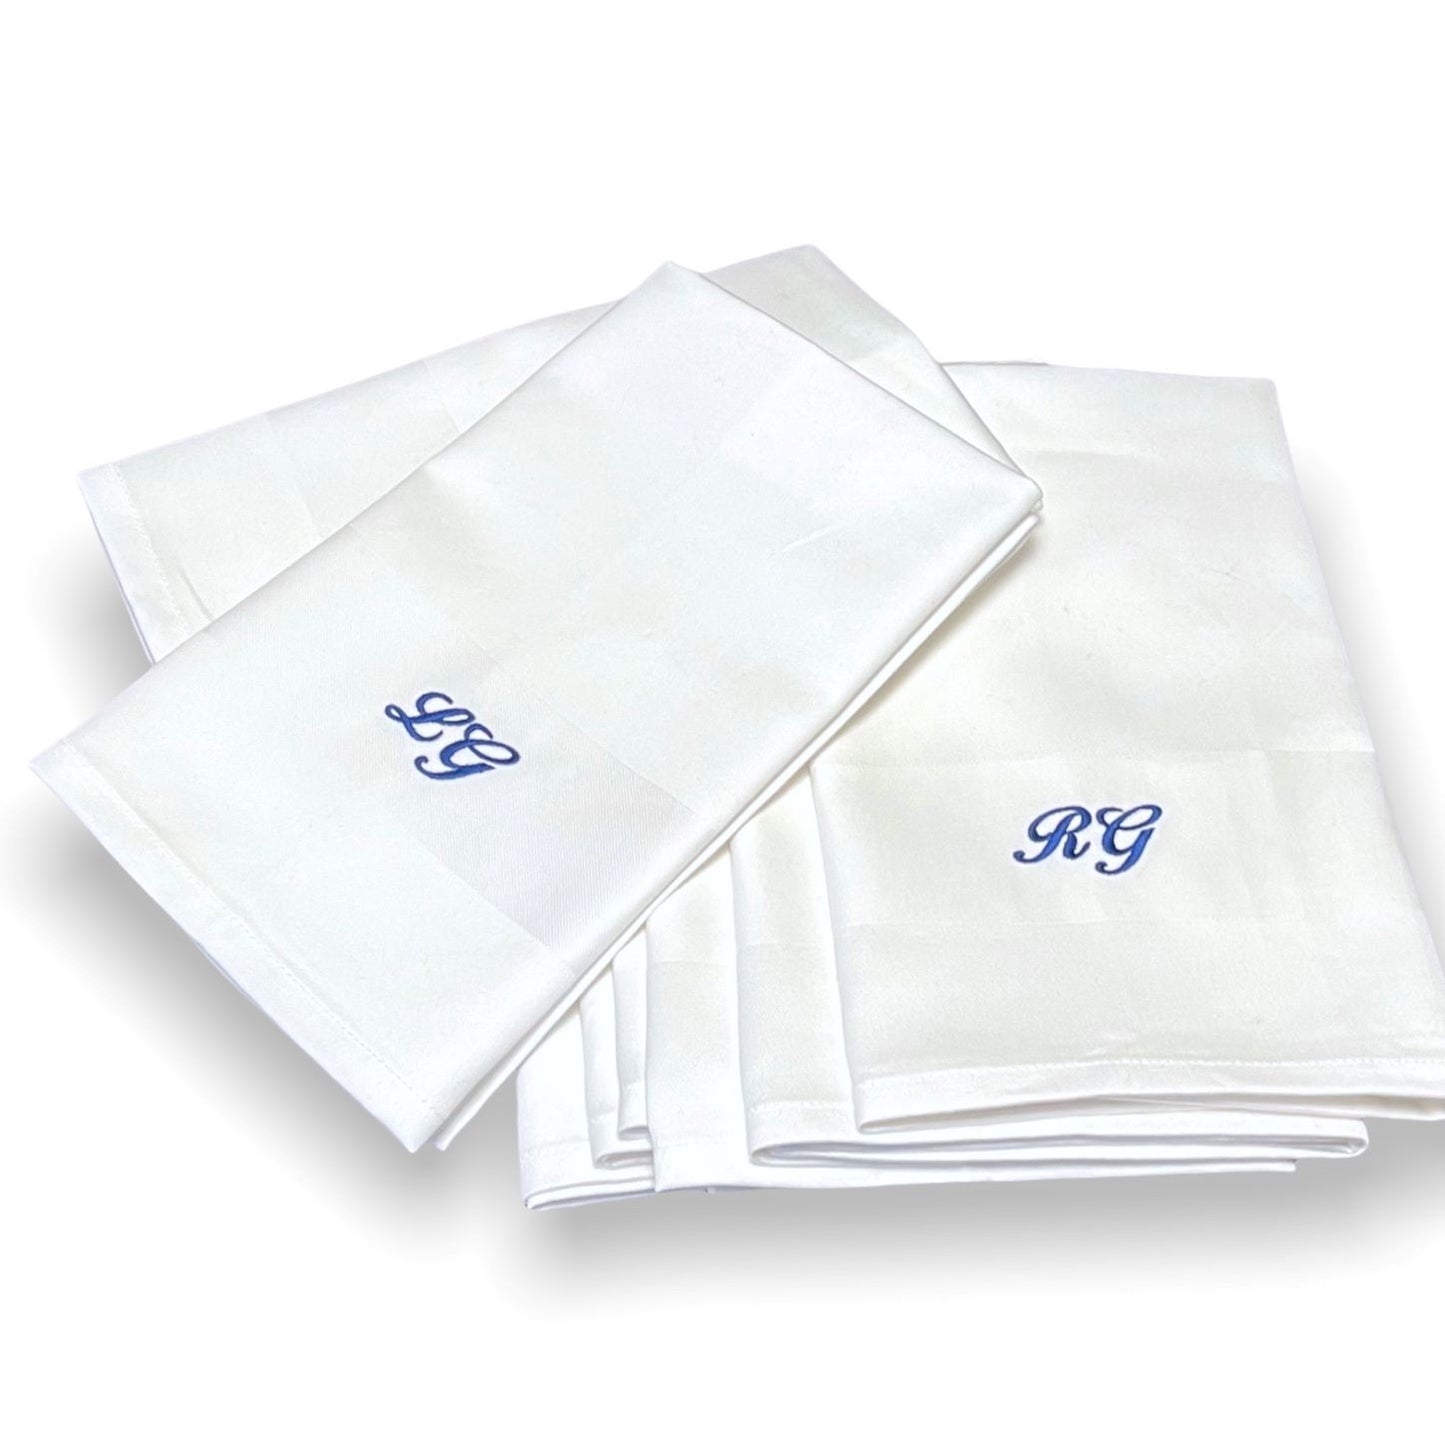 Klassiska lyxiga vita tygservetter av tät och fin bomull. Monogram broderas på servetten. Blått monogram på vit tygservett är klassiskt och tidlöst.